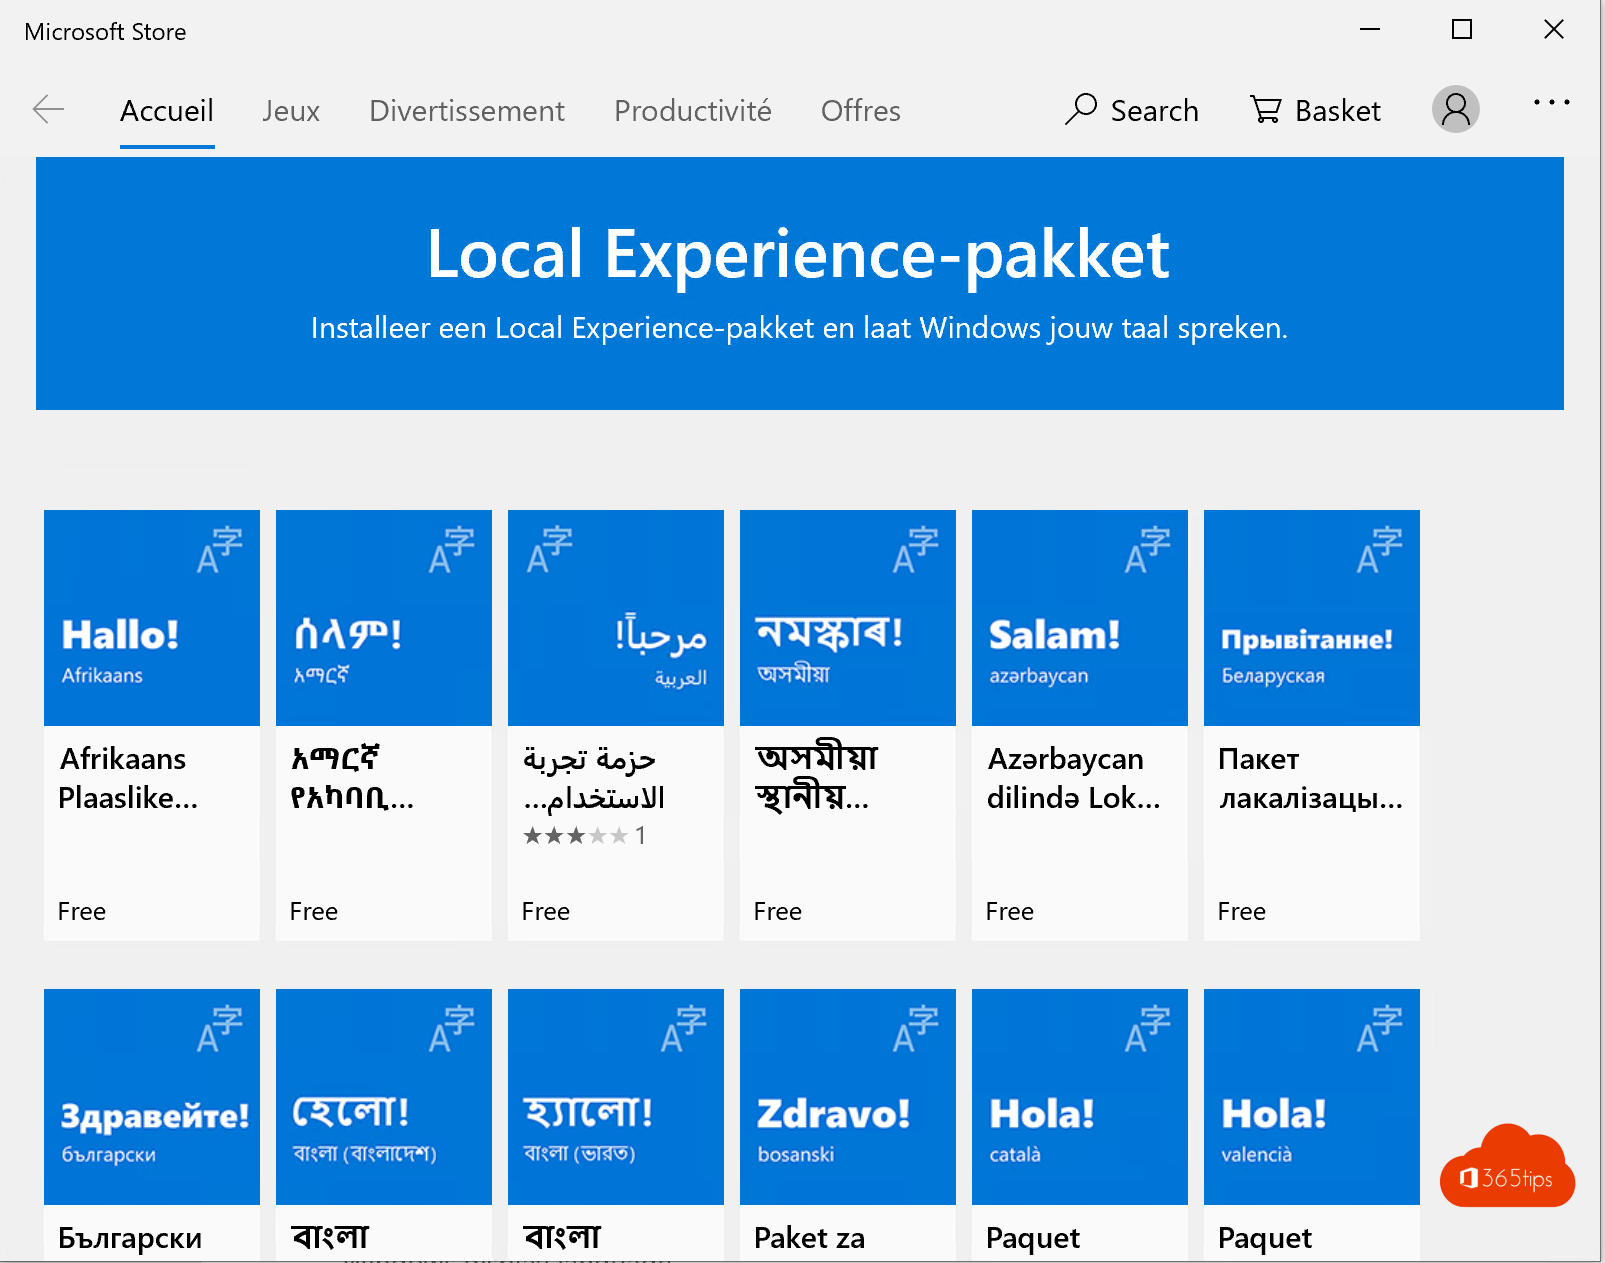 So ändern Sie die Sprache in Windows 10 auf Belgien - Niederländisch